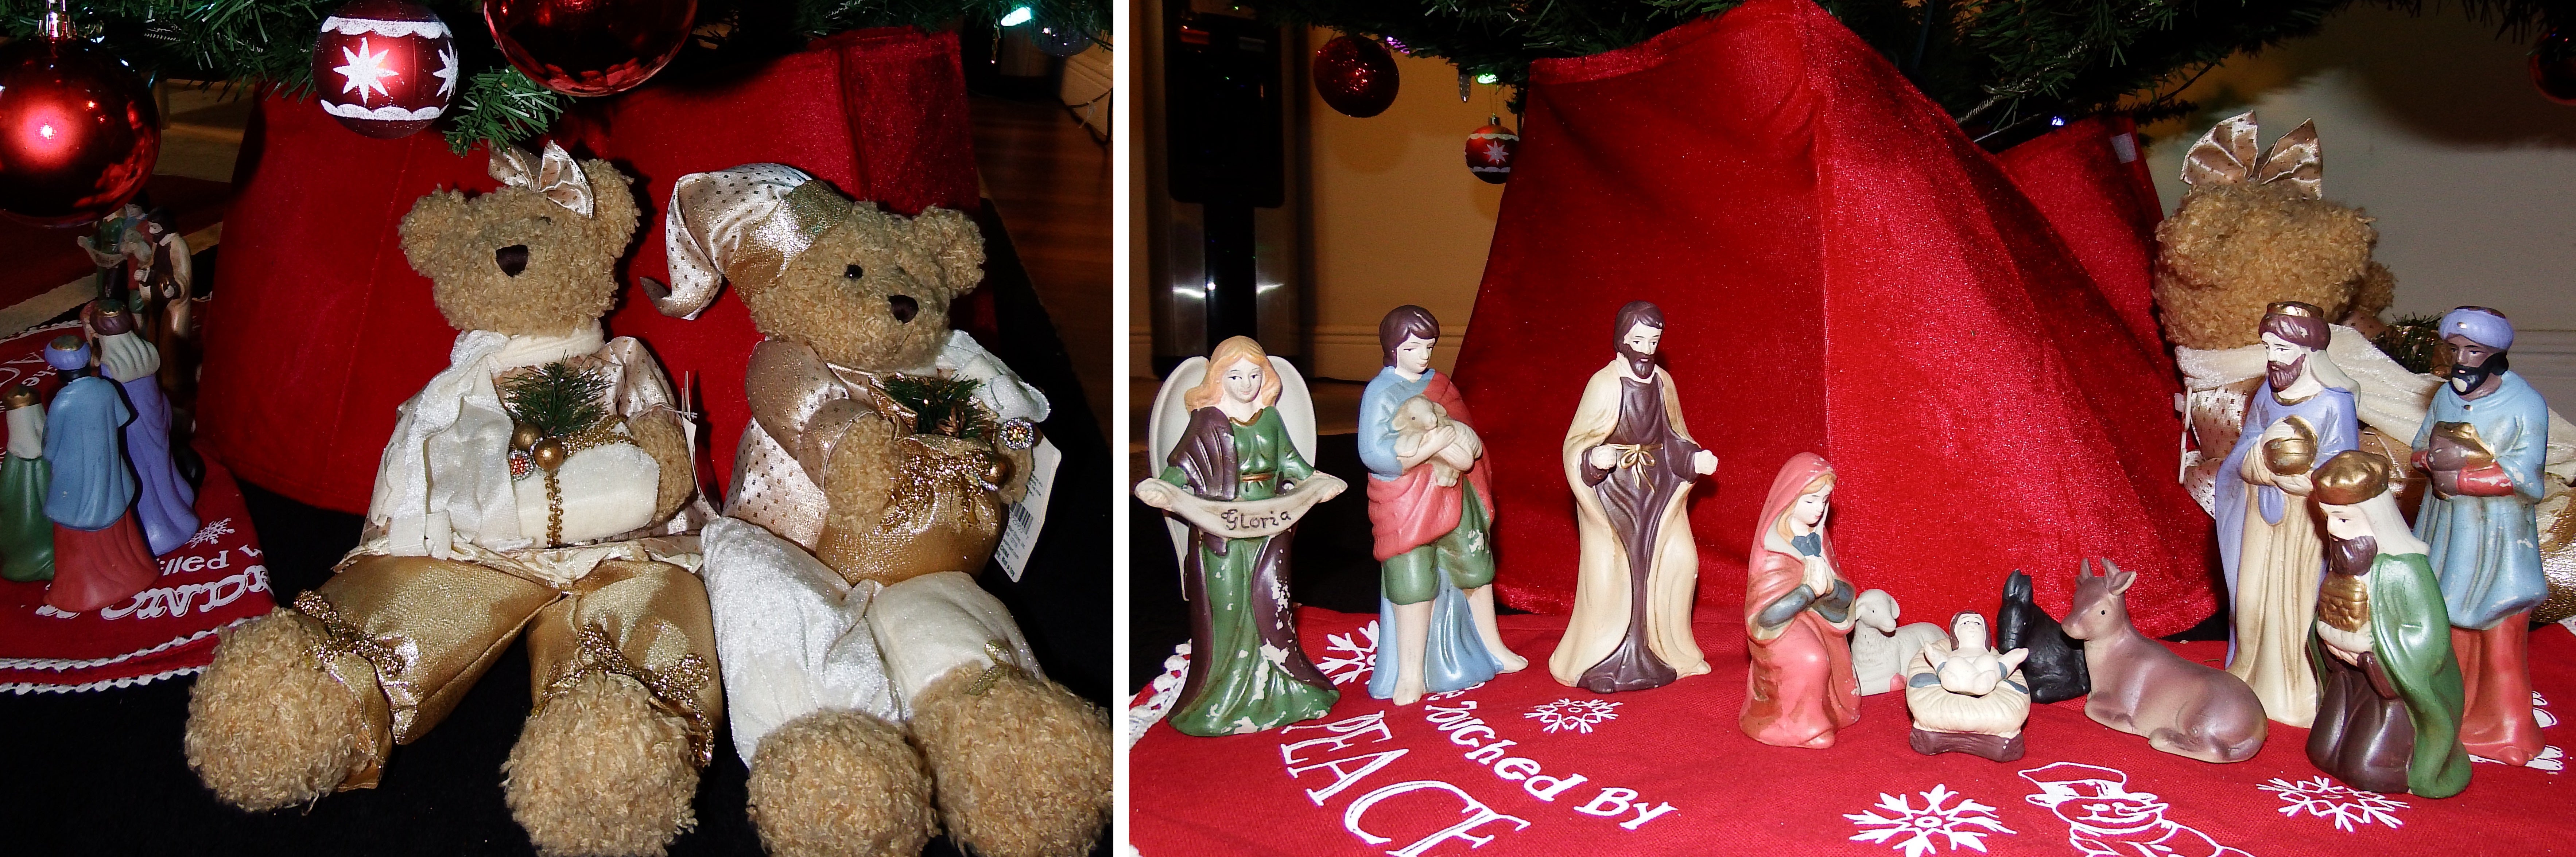 artsy sister, nativity, xmas tree